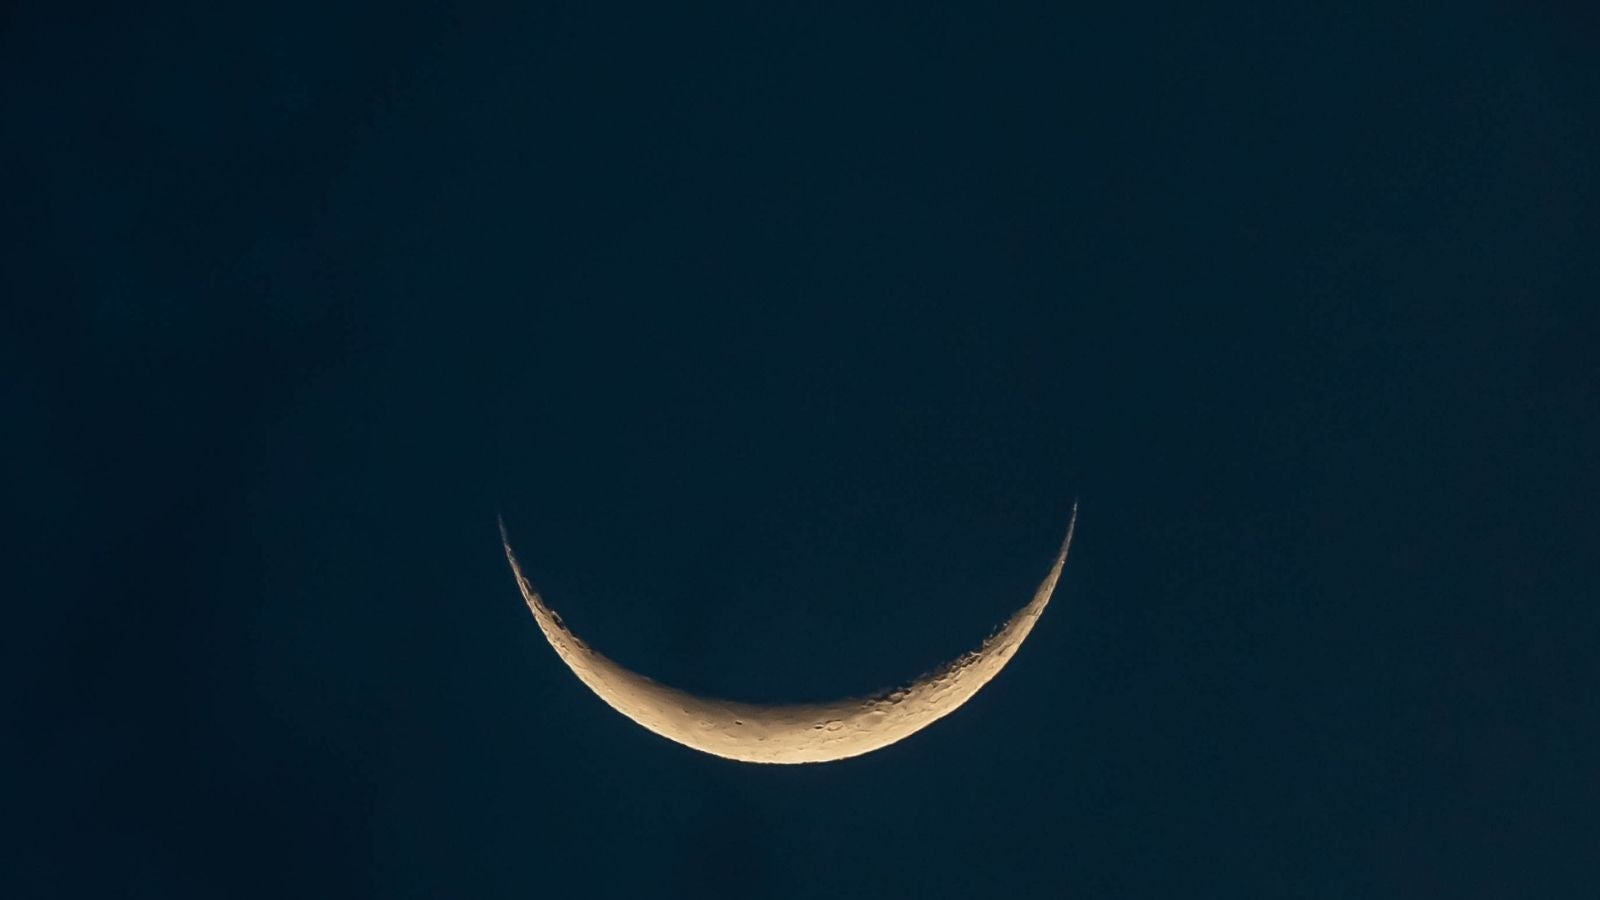 New moon at night